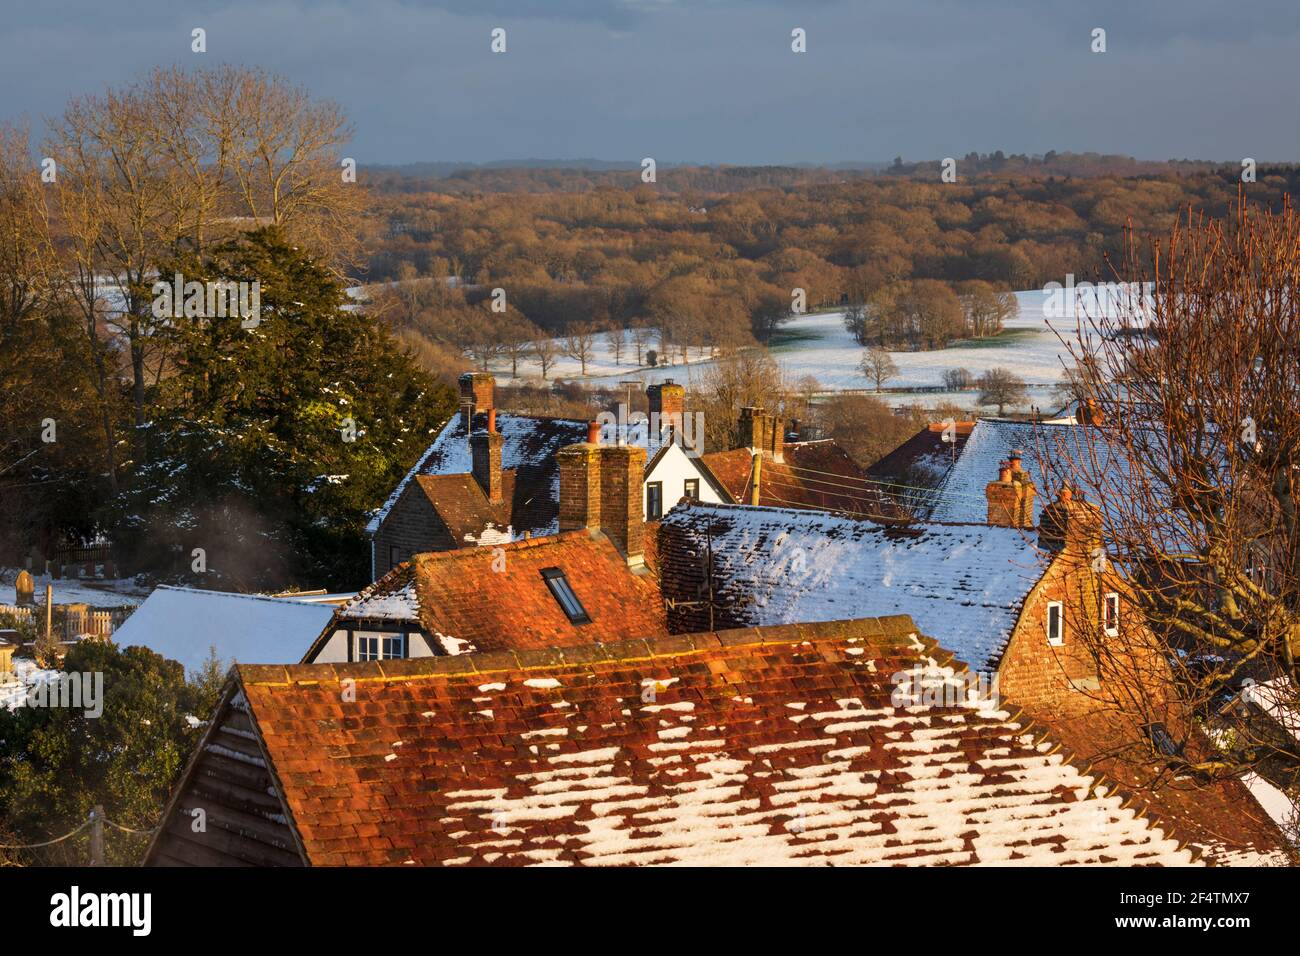 Blick über die Dächer der Hütte und High Weald Landschaft im Winterschnee im späten Nachmittag Sonnenlicht, Burwash, East Sussex, England, Vereinigtes Königreich, Europa Stockfoto